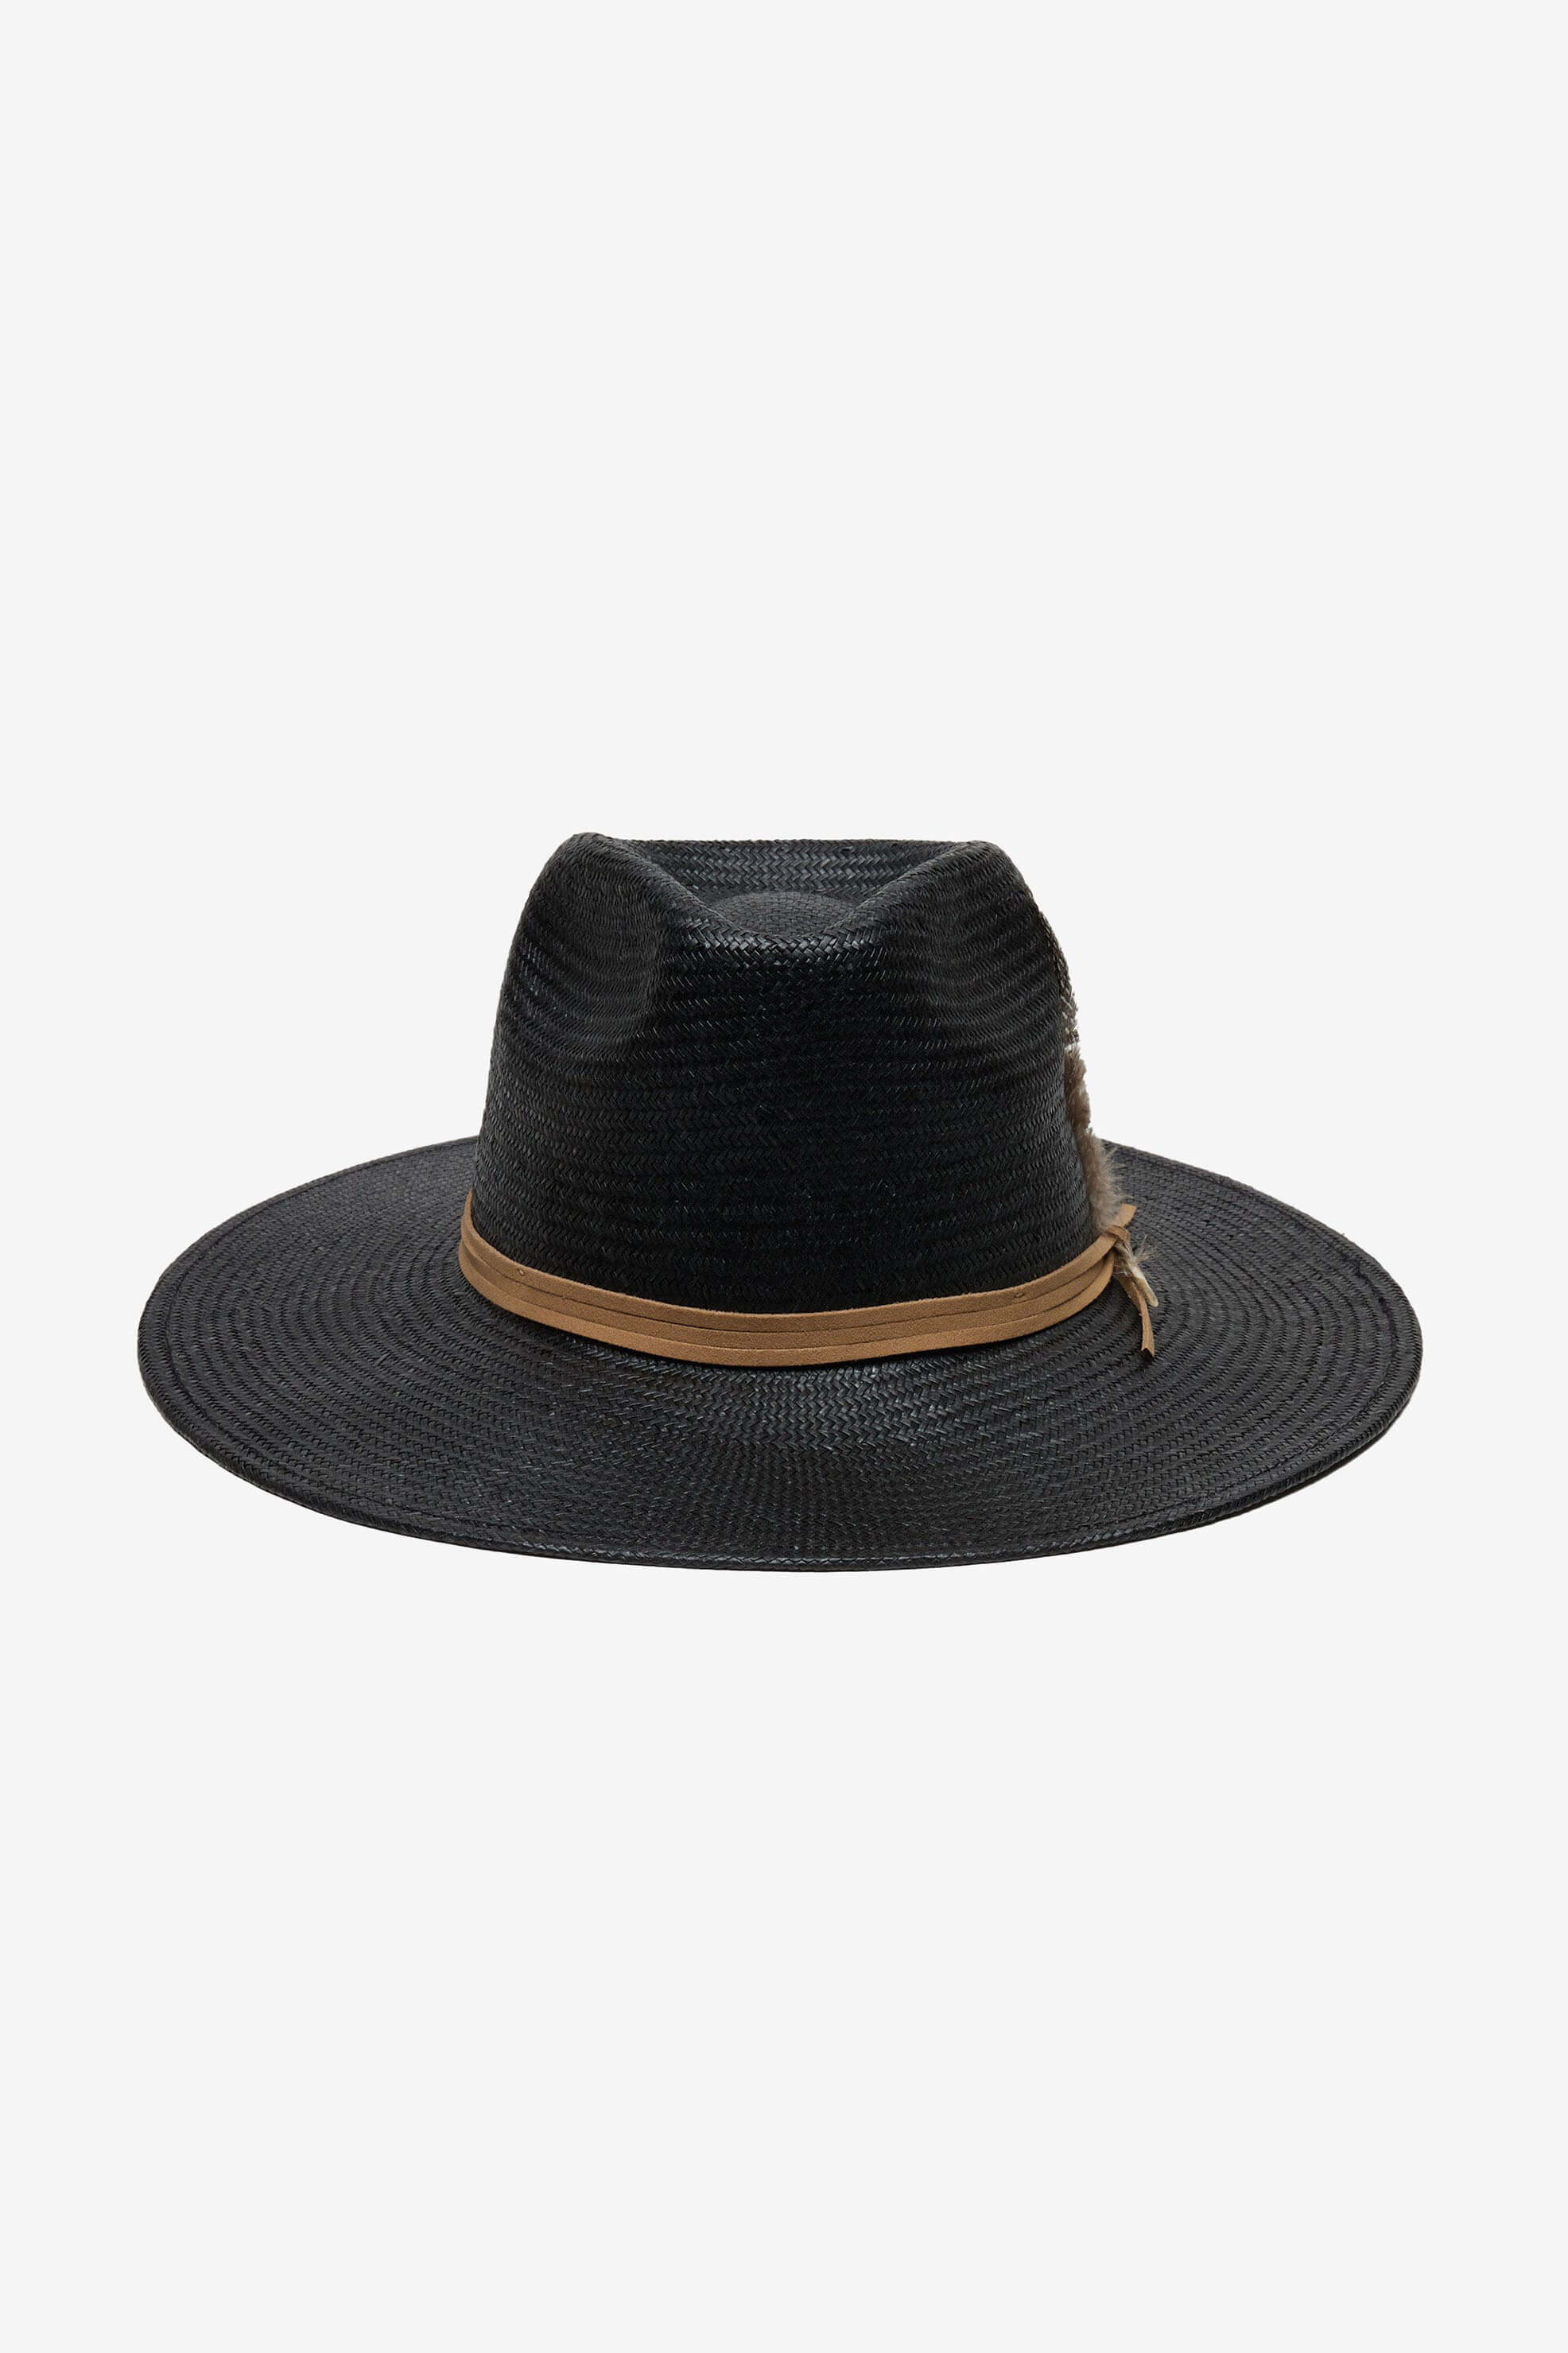 Wyeth Valencia Hat in black